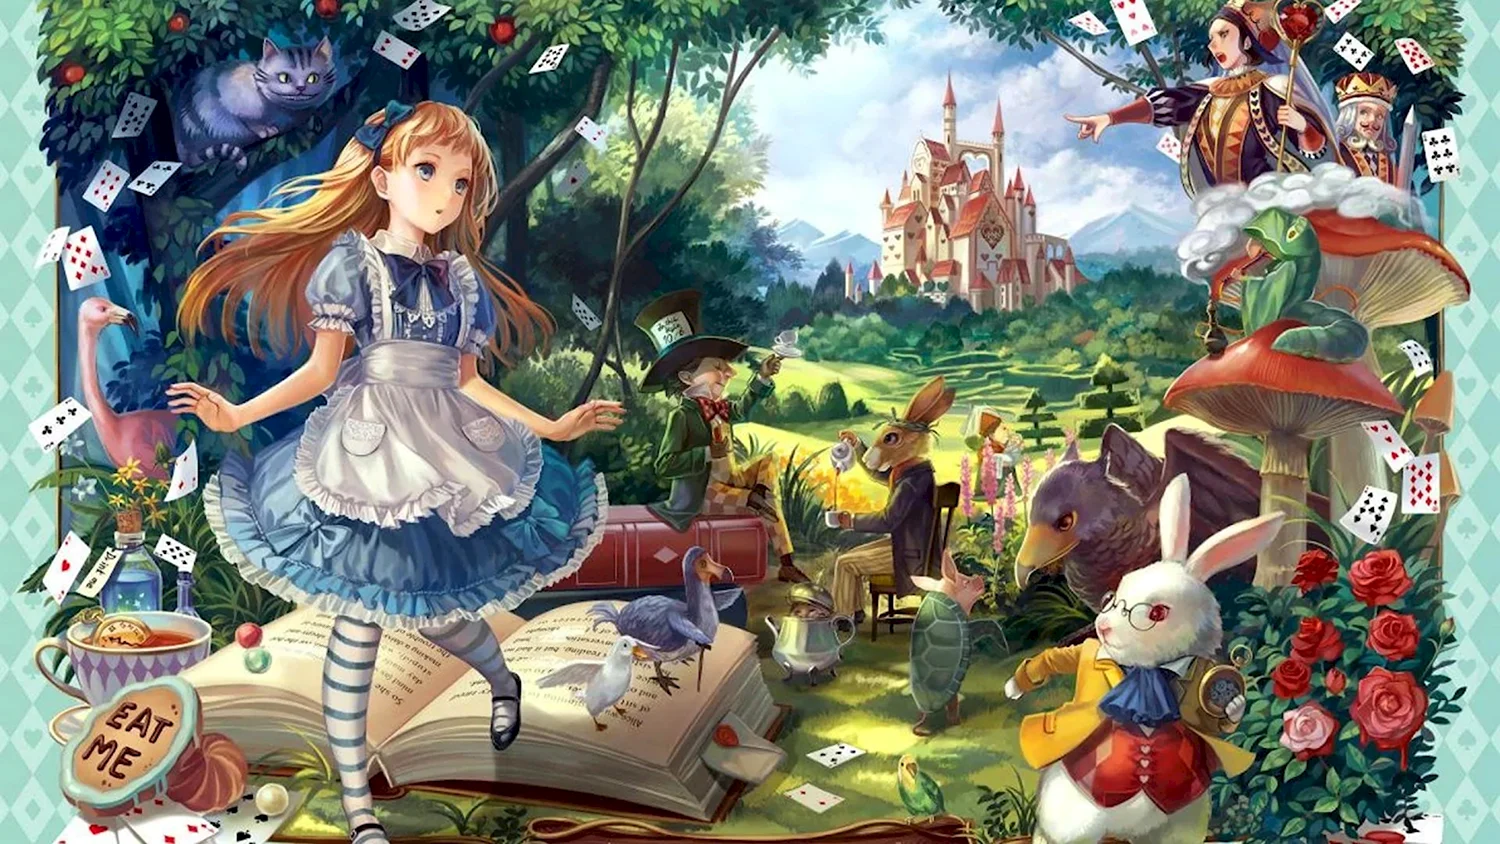 Сказка алиса в стране чудес словами. Кэрролл Льюис "Алиса в стране чудес". Алиса в стране чудес иллюстрации Льюиса Кэрролла. Алиса в стране чудес Алиса. Алиса в стране чудес иллюстрации Алиса.